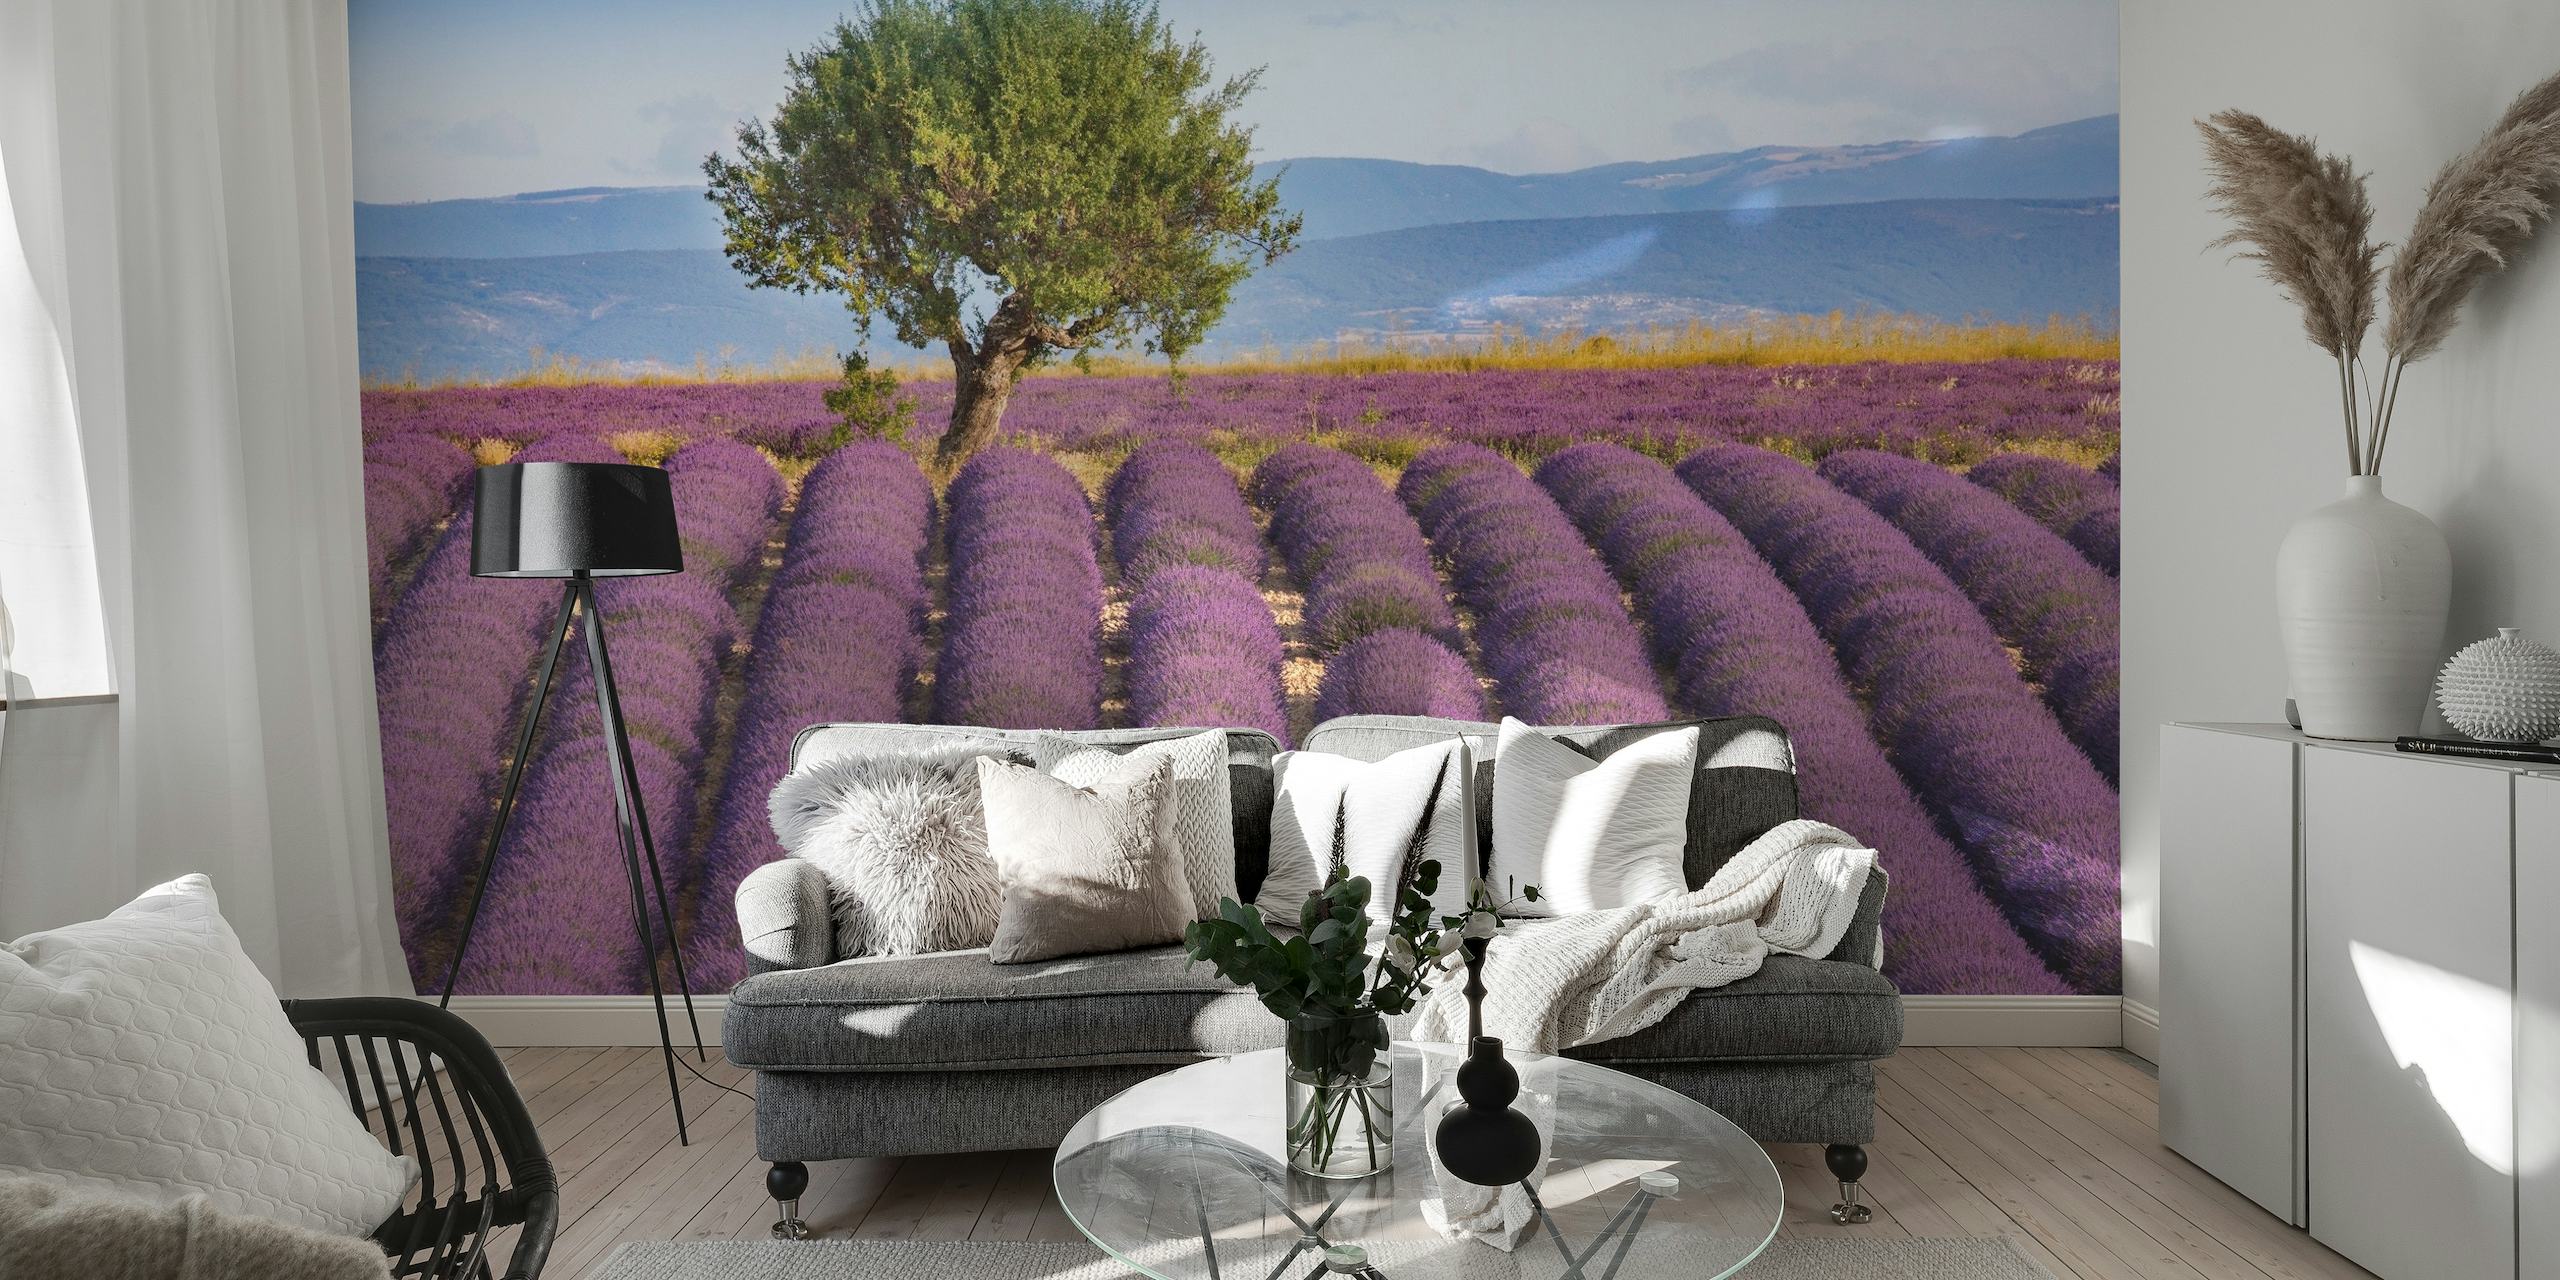 Uma cena calma de Lavender Haute Provence com ricos campos roxos sob um céu claro